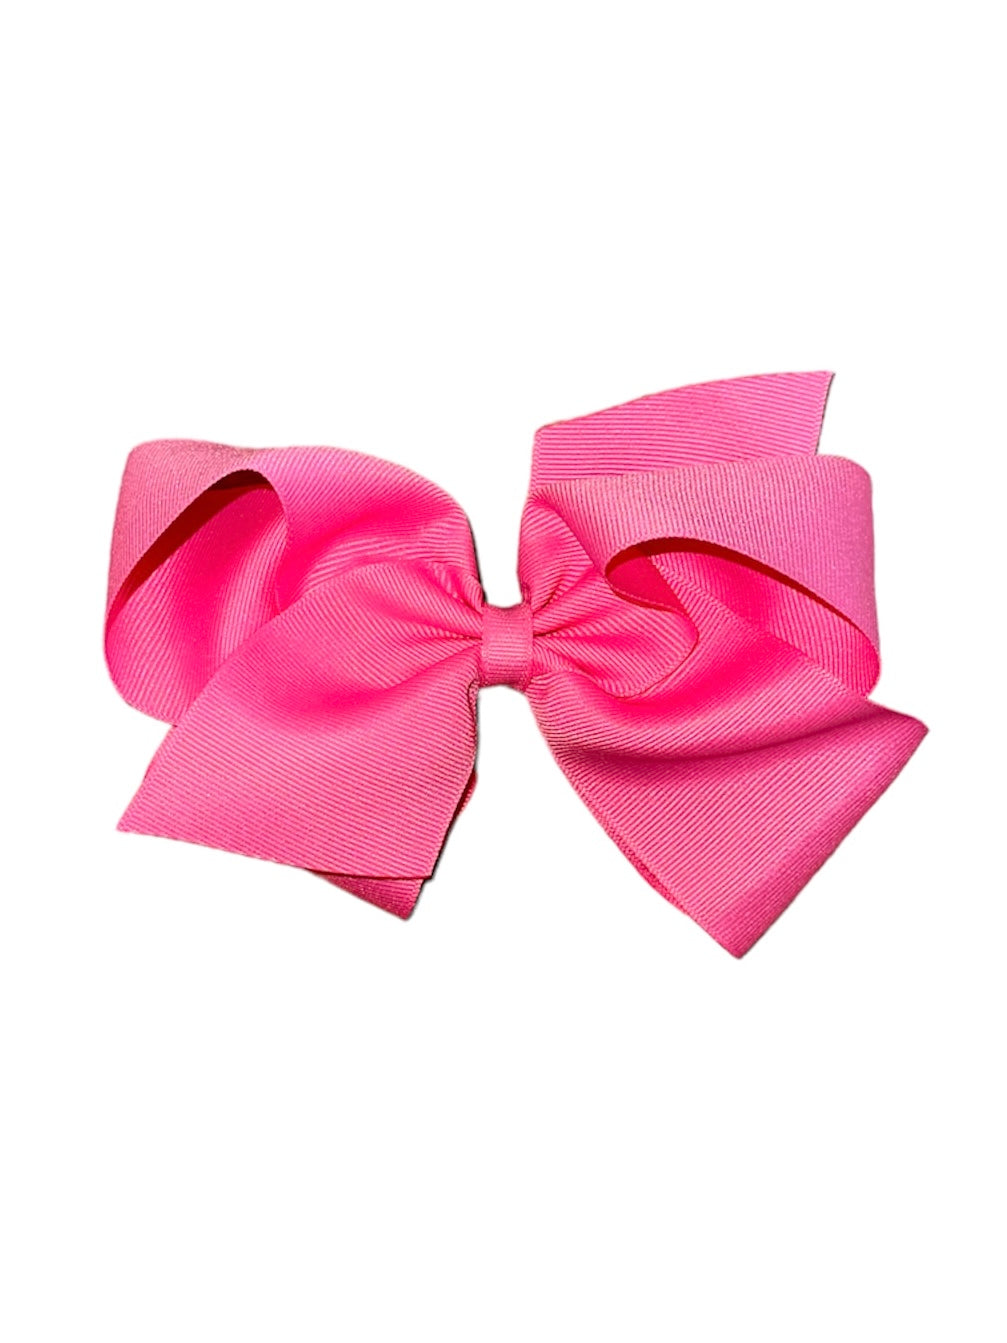 Medium Hot Pink Bow (KB)